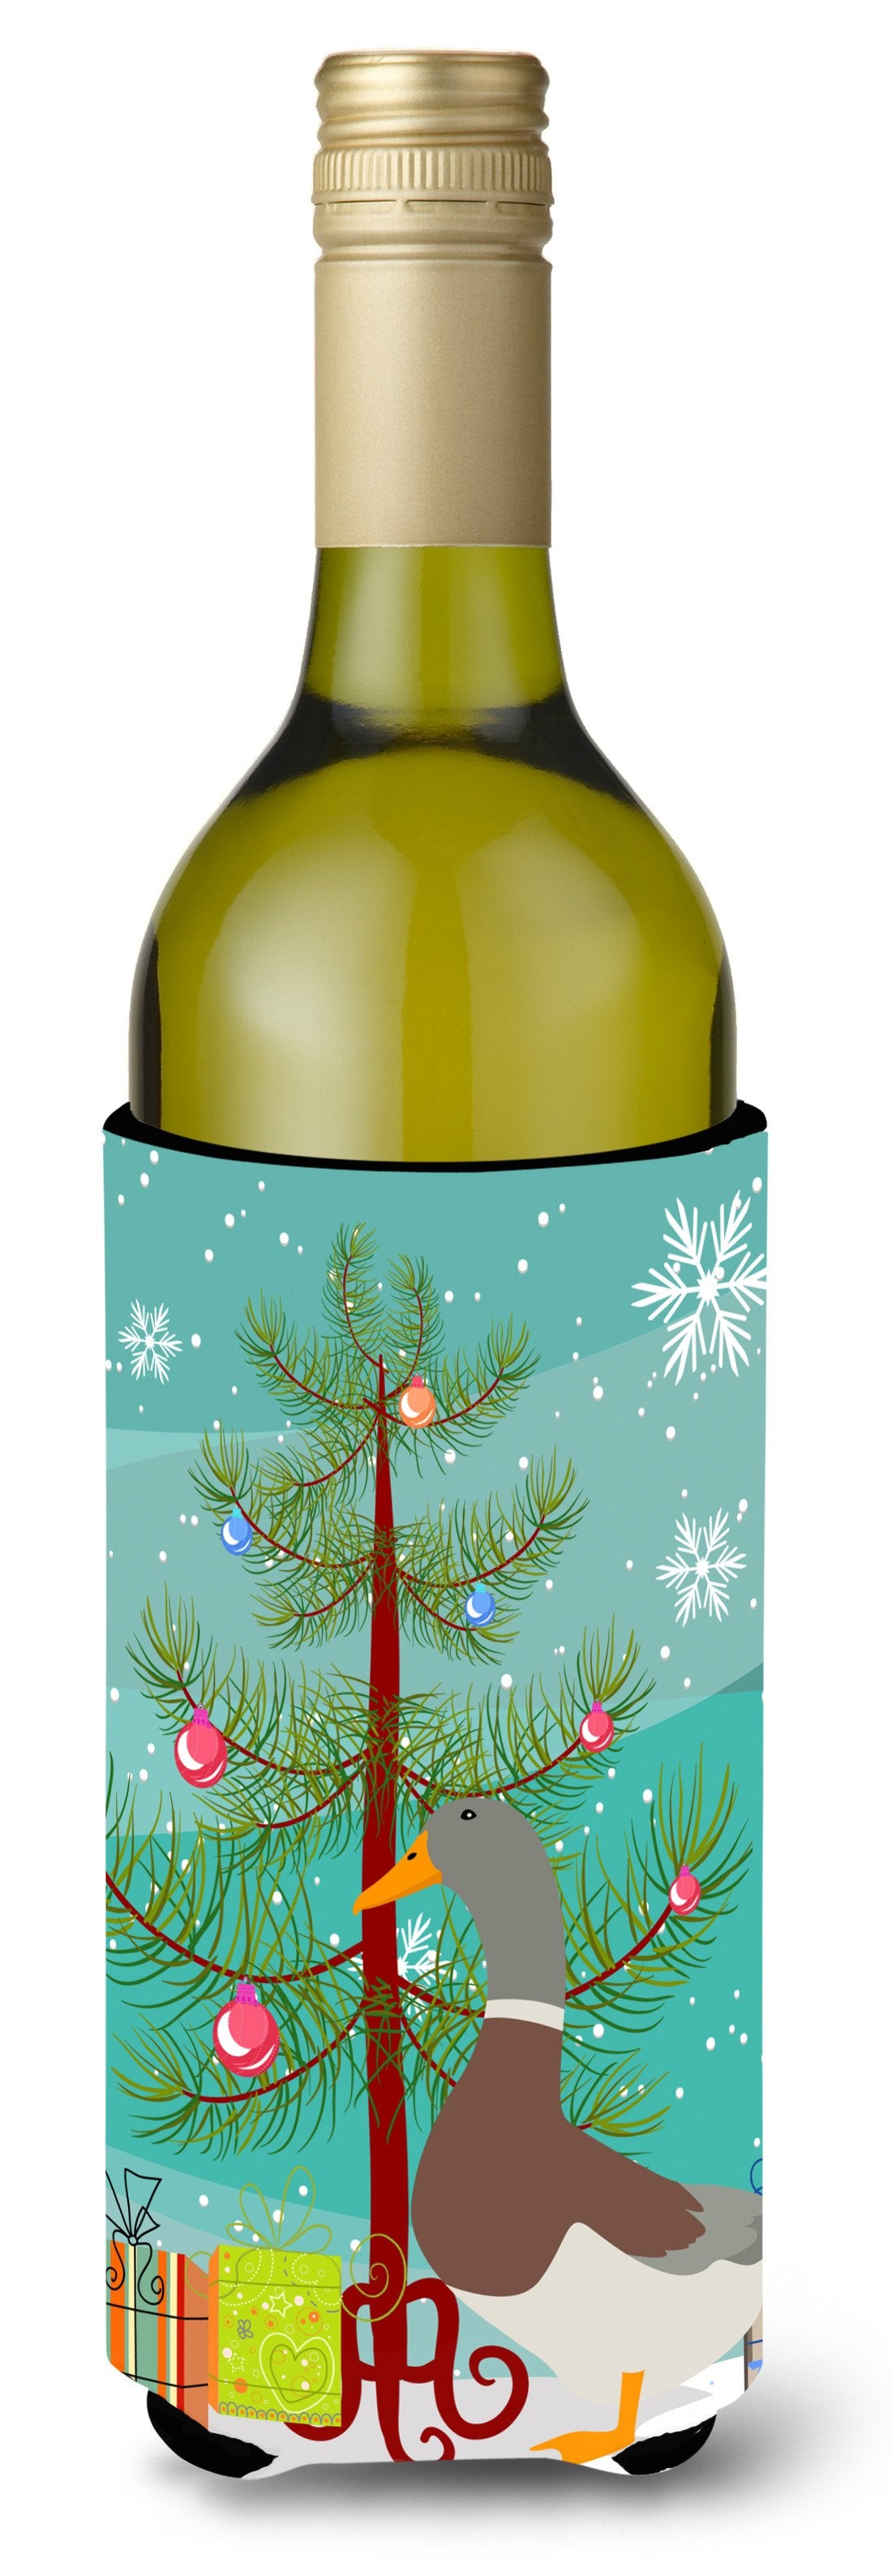 Saxony Sachsenente Duck Christmas Wine Bottle Beverge Insulator Hugger BB9230LITERK by Caroline's Treasures